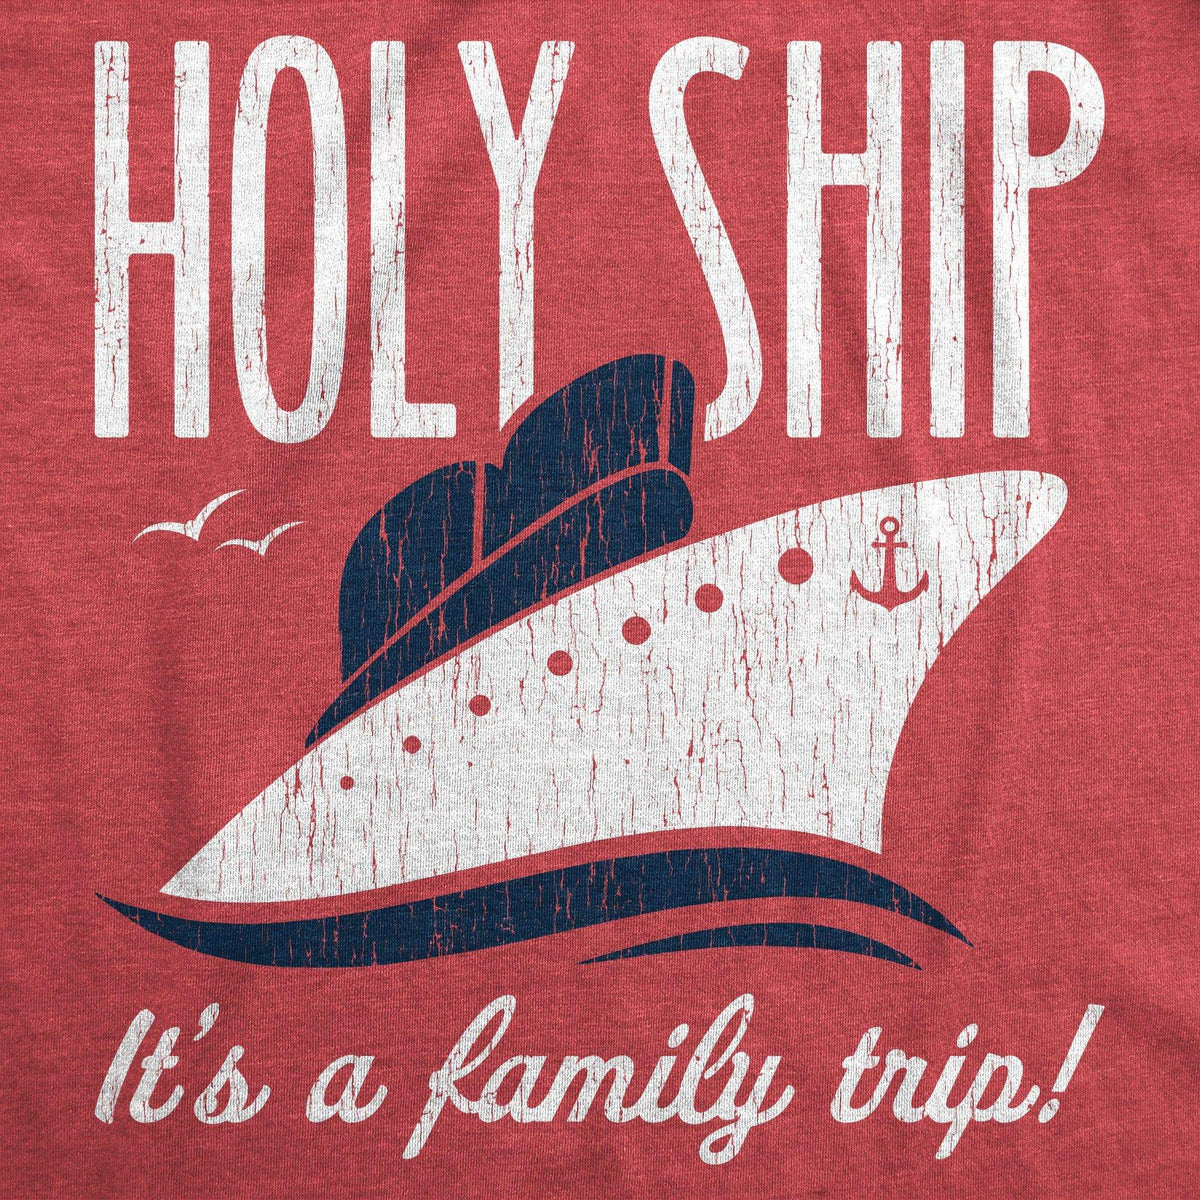 Holy Ship It&#39;s A Family Trip Men&#39;s Tshirt - Crazy Dog T-Shirts